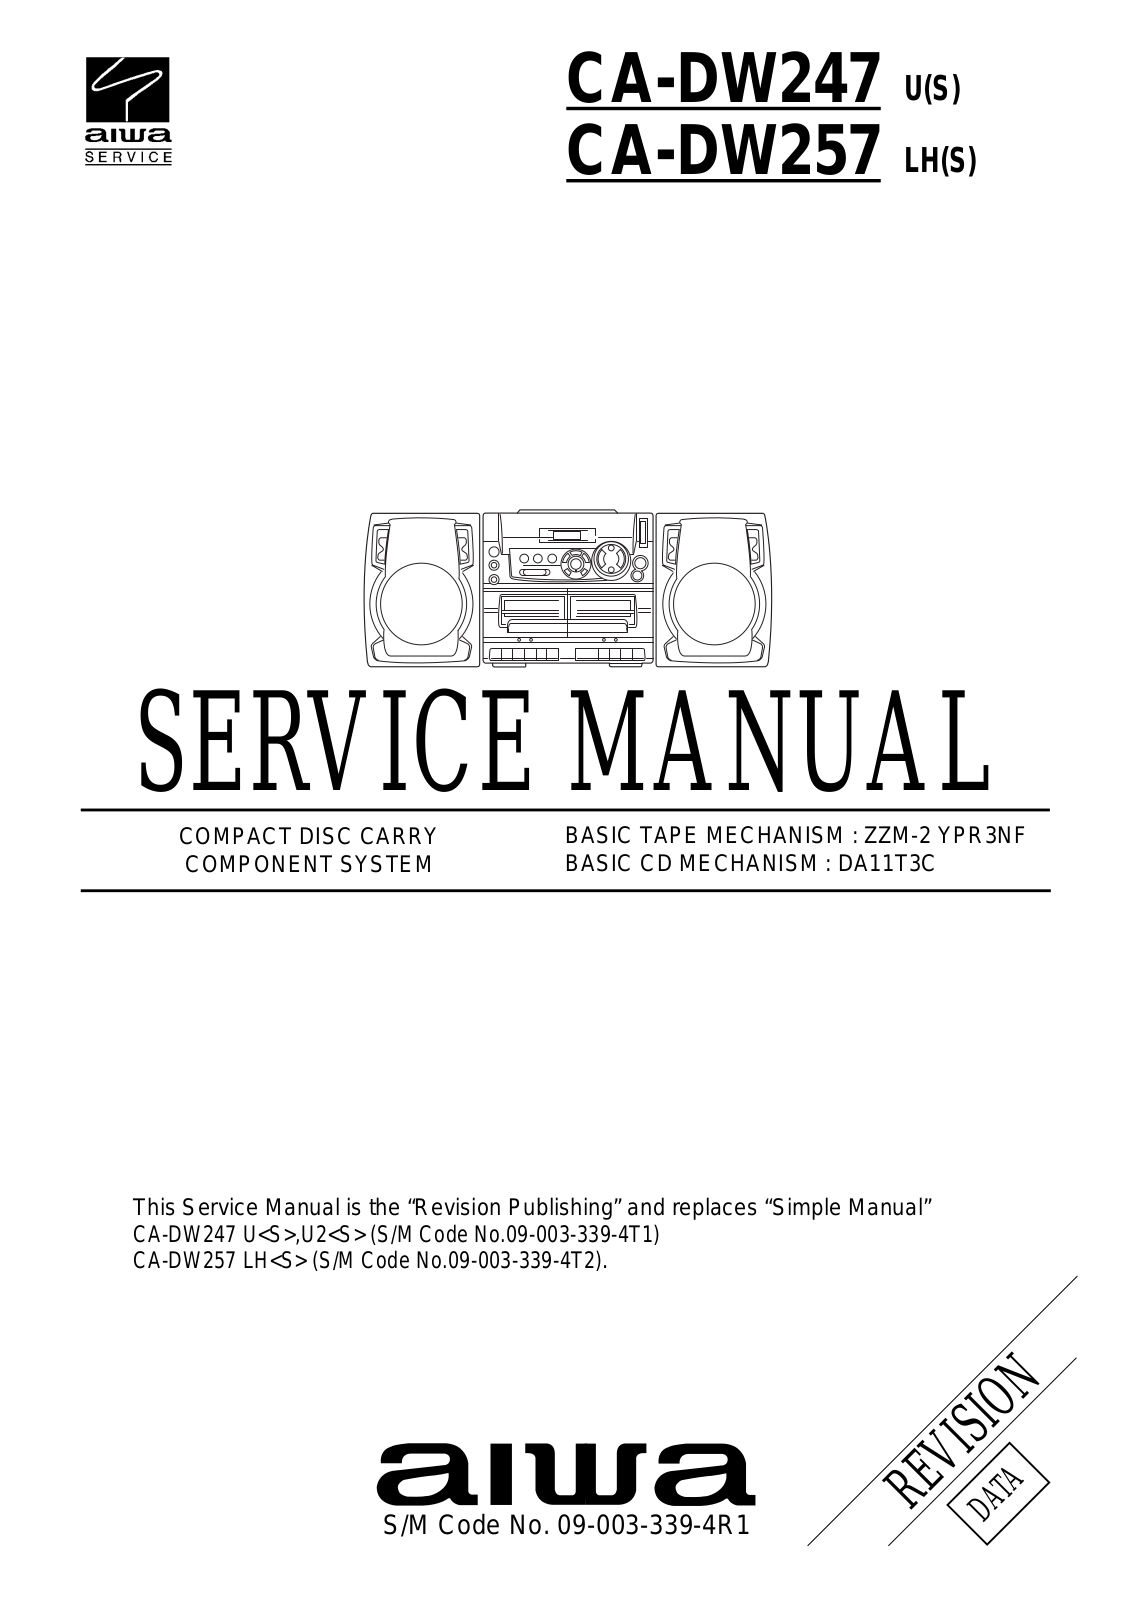 Aiwa CA-DW257 LHS, CA-DW247 US Service Manual